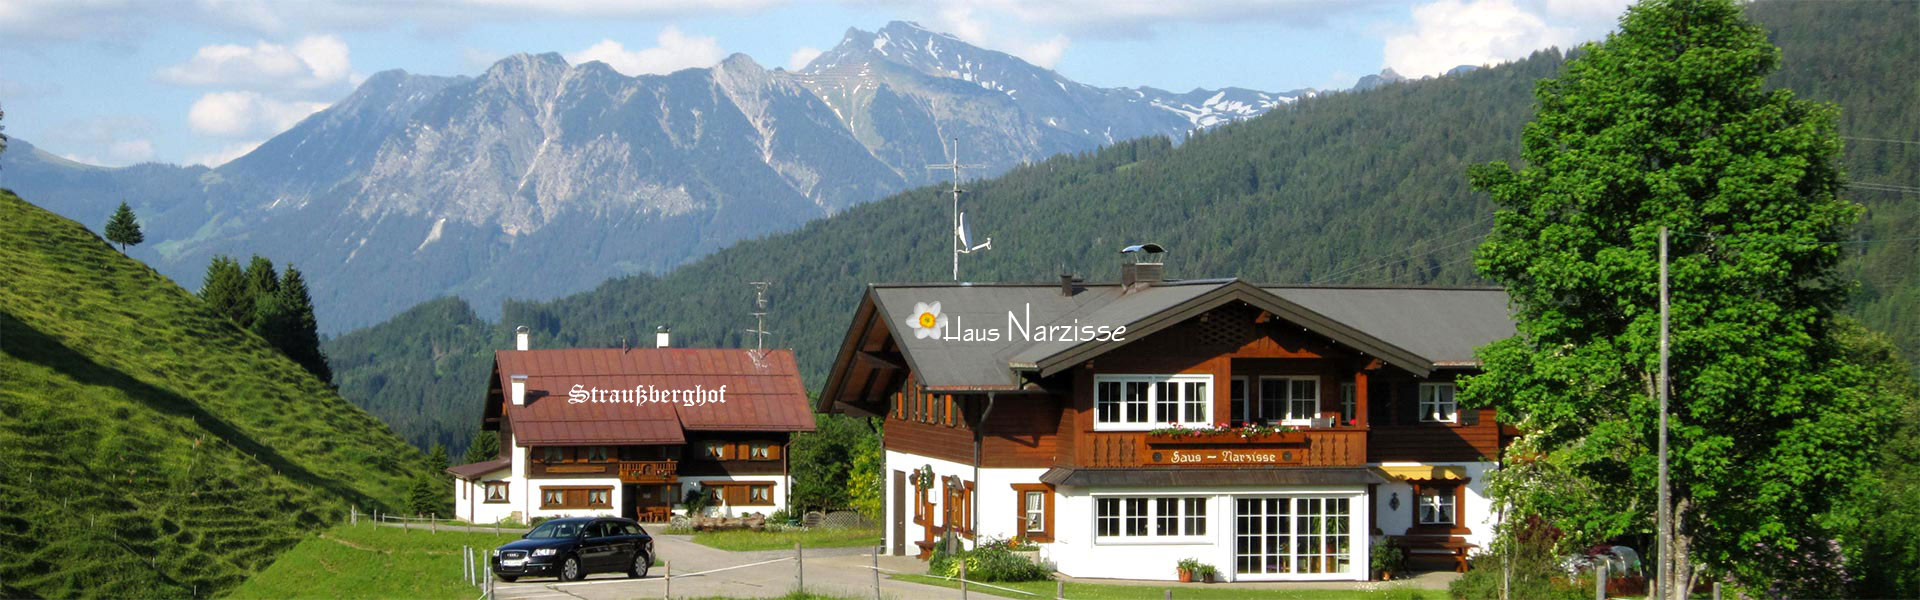 Haus Narzisse und Straußberghof im Sommer - Ferienwohnungen Kleinwalsertal - Ruhige Lage